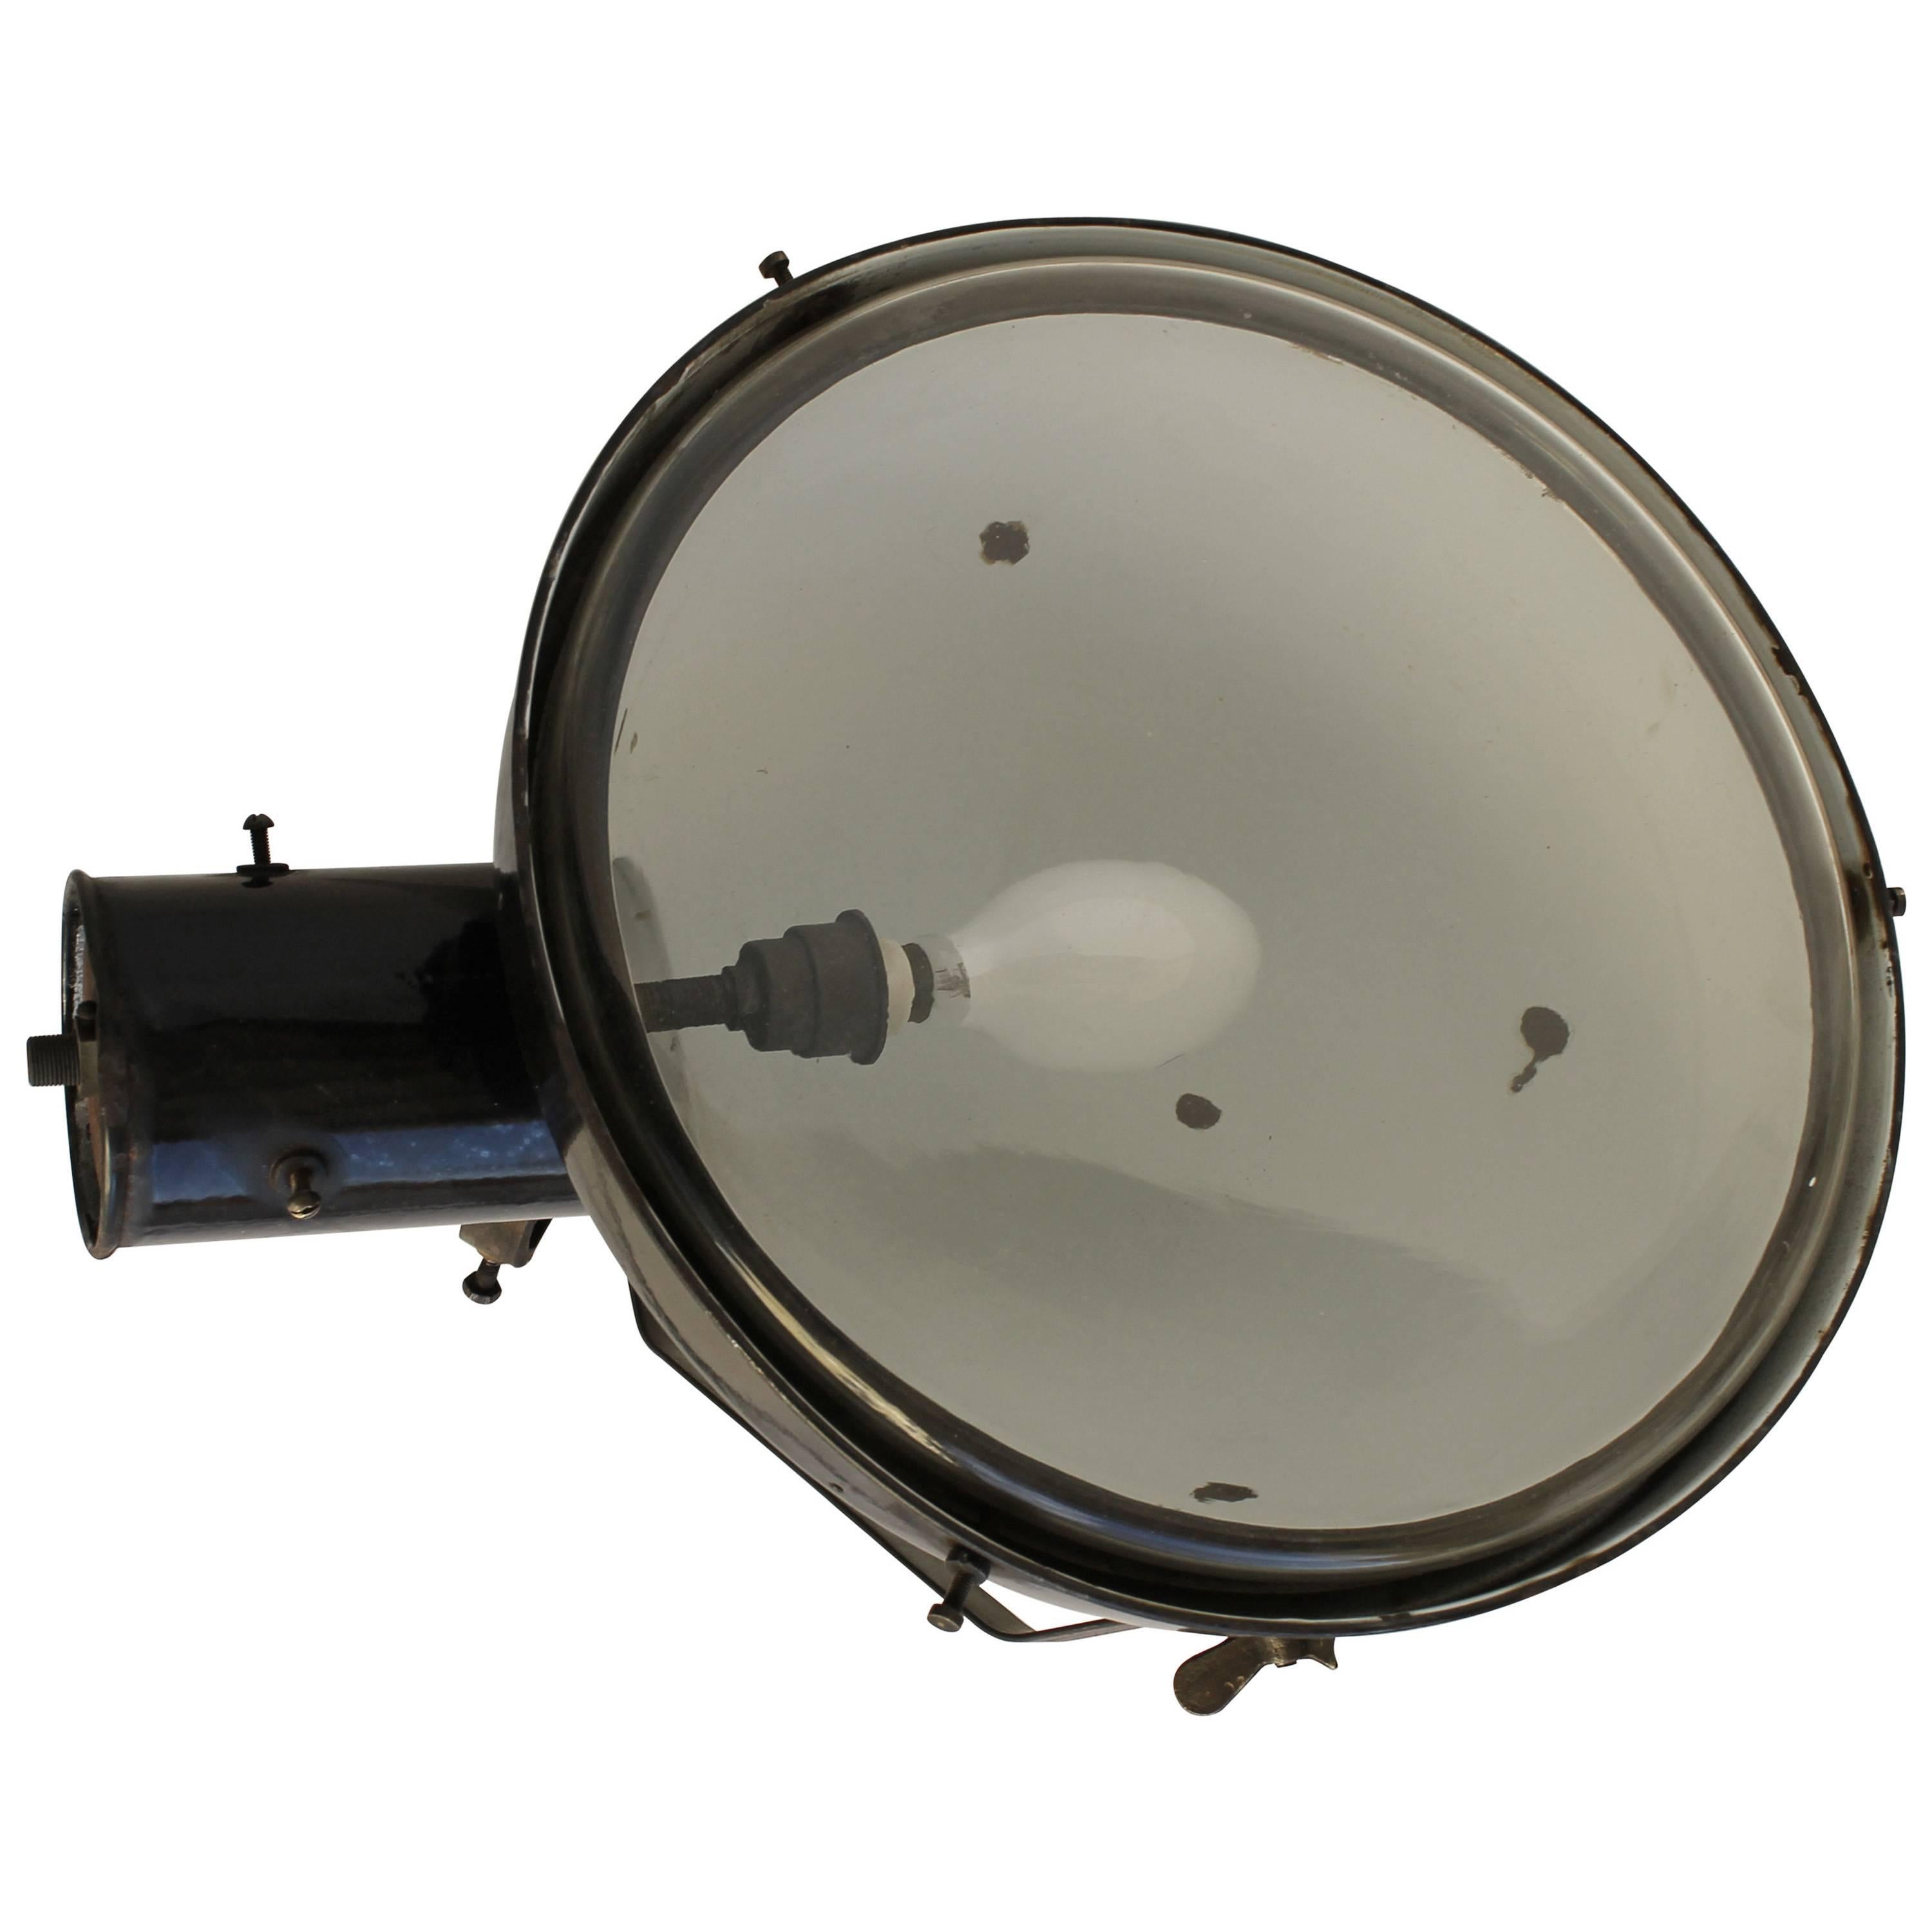 Vintage Industrial Big Spotlight Lamp For Sale